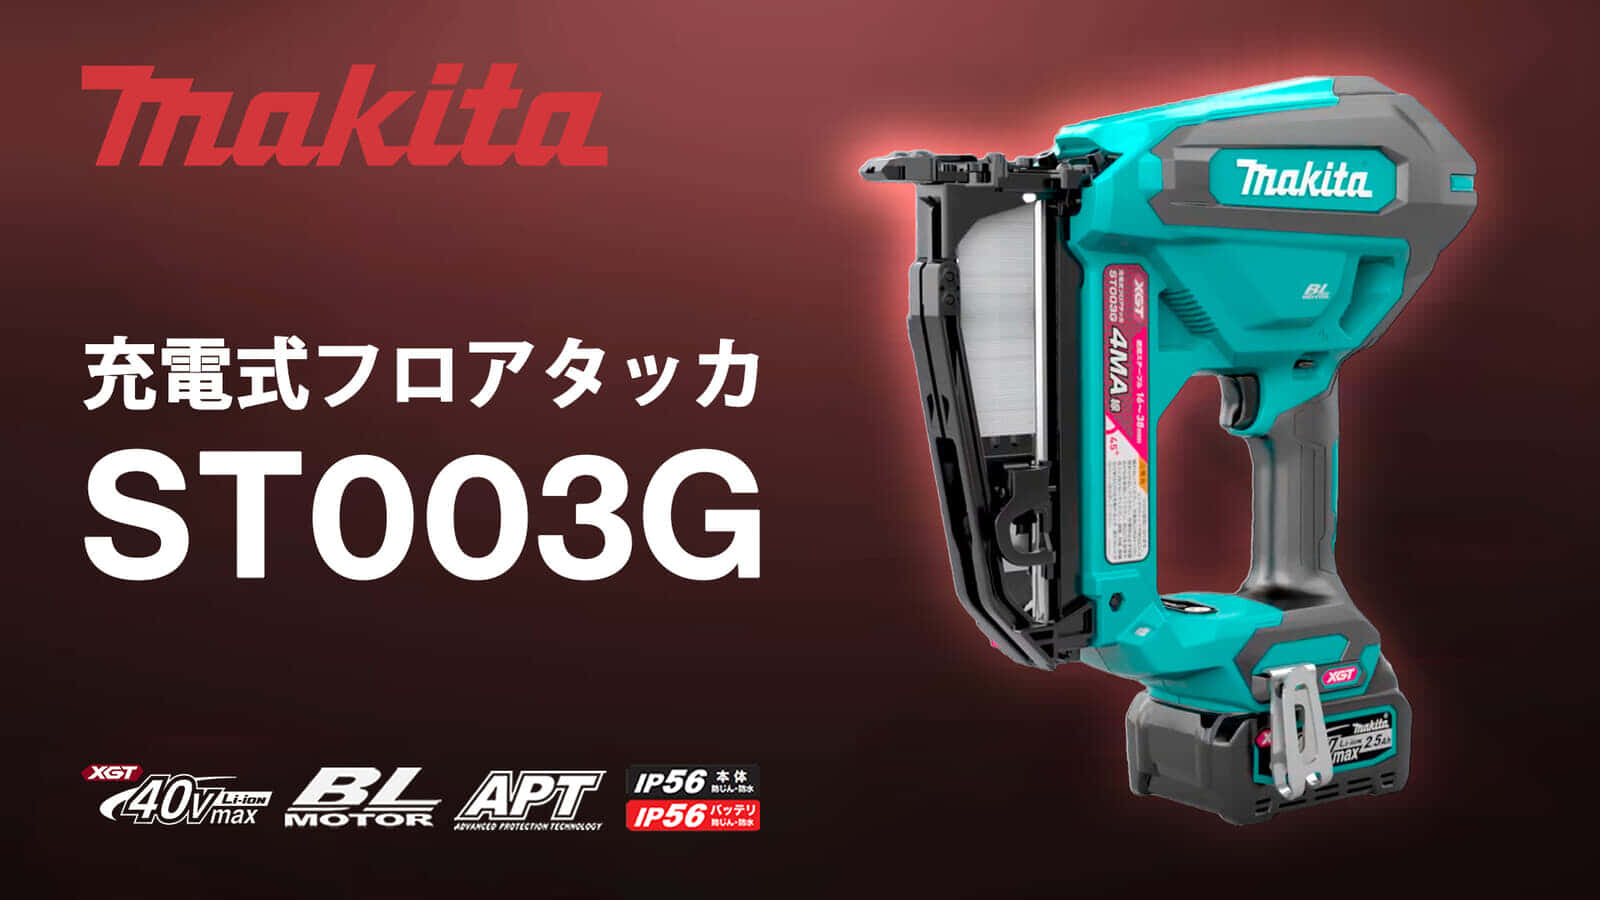 マキタ ST003G 充電式フロアタッカを発売、フライホイール方式でハイパワー&低反動を実現